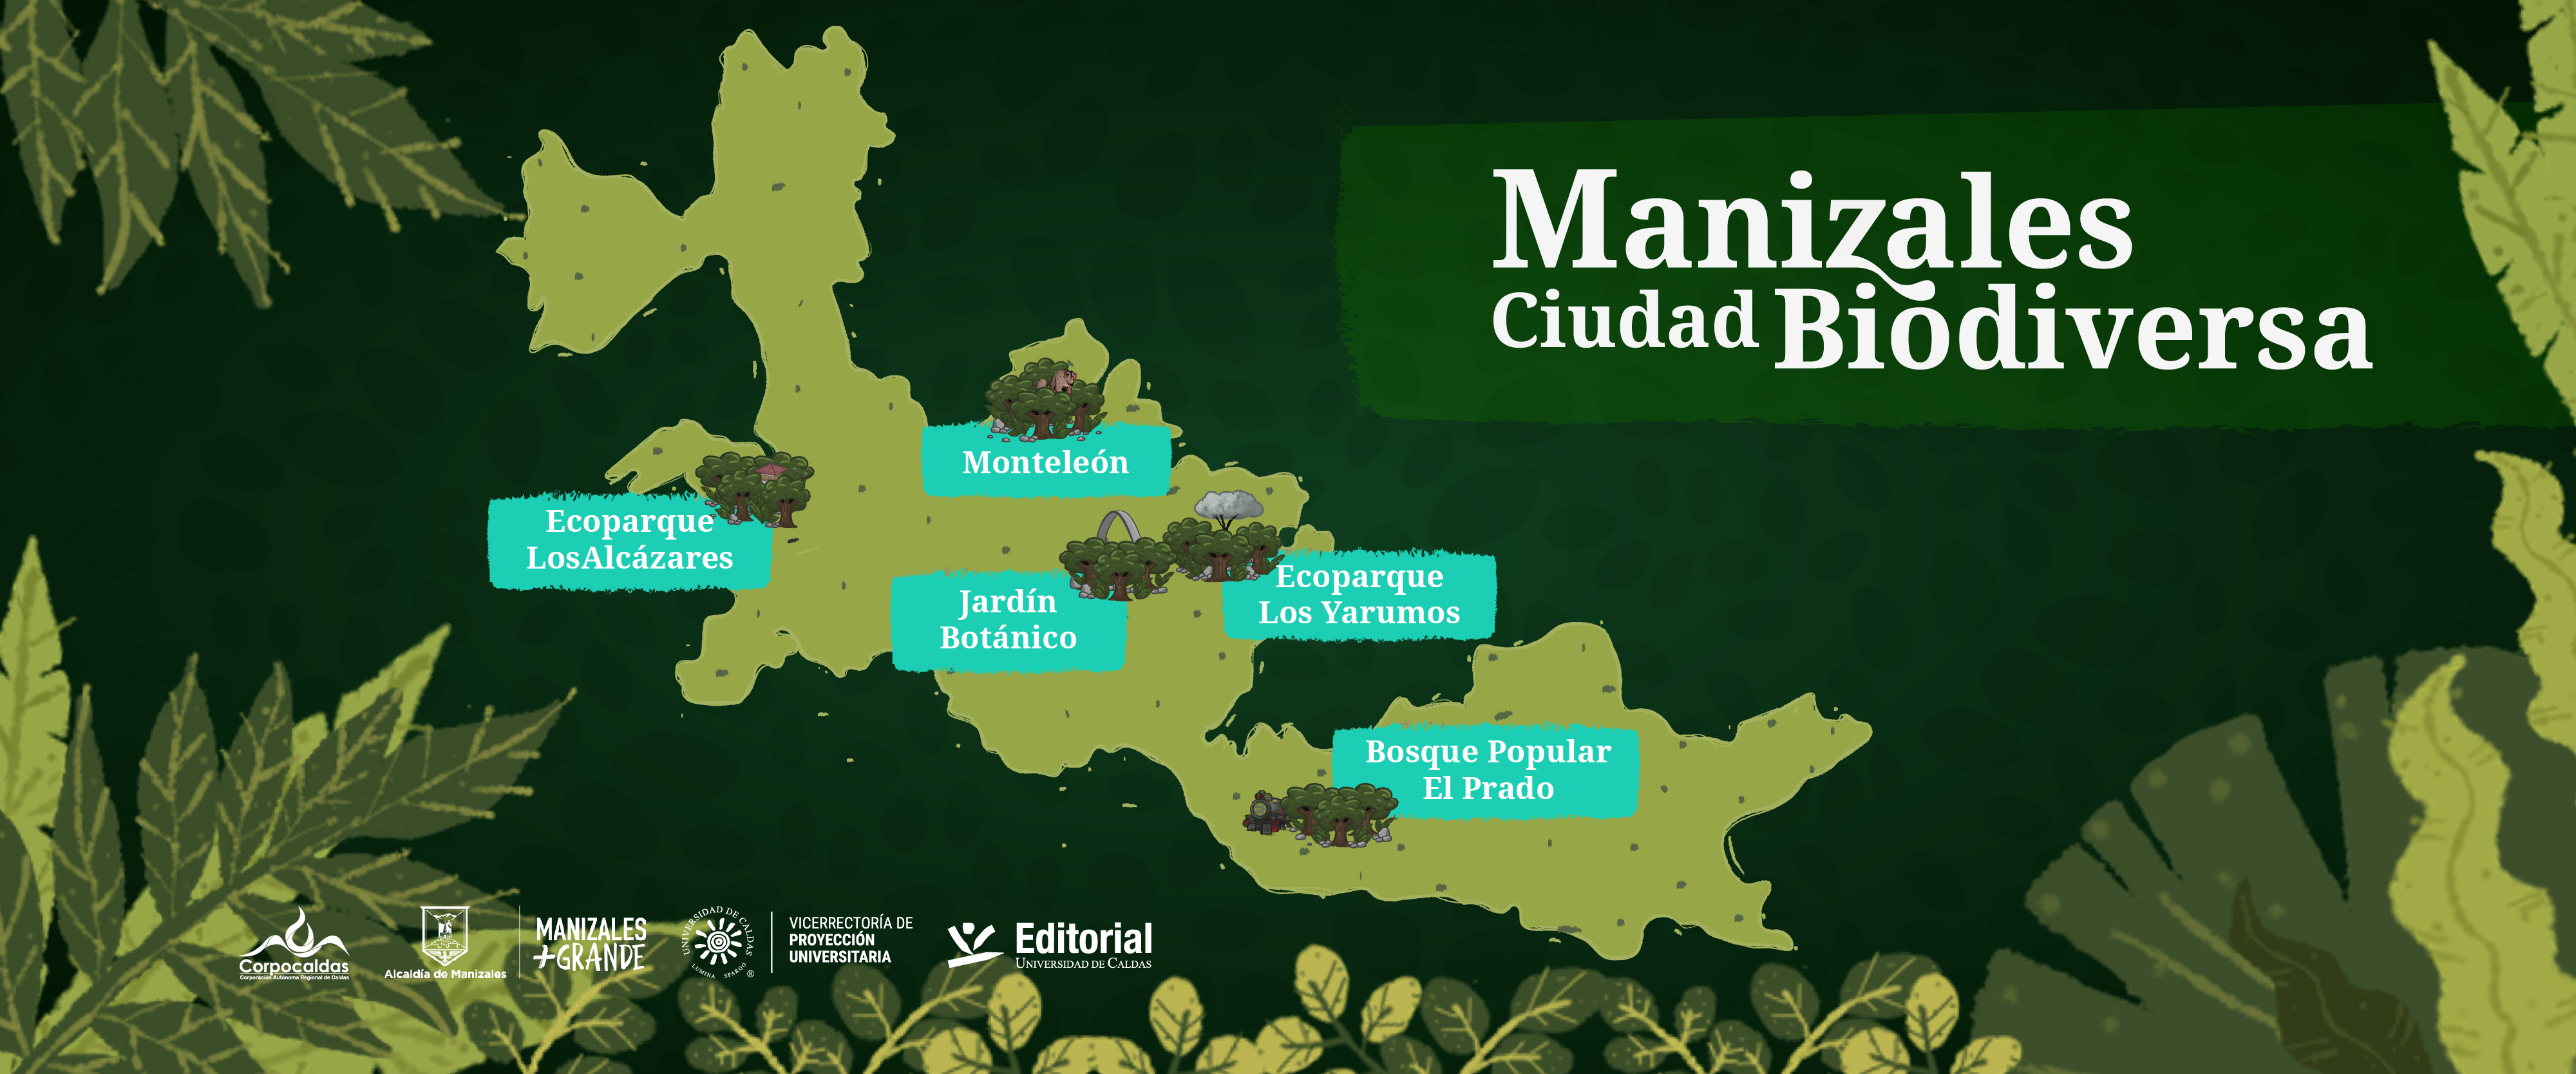 Manizales Ciudad Biodiversa